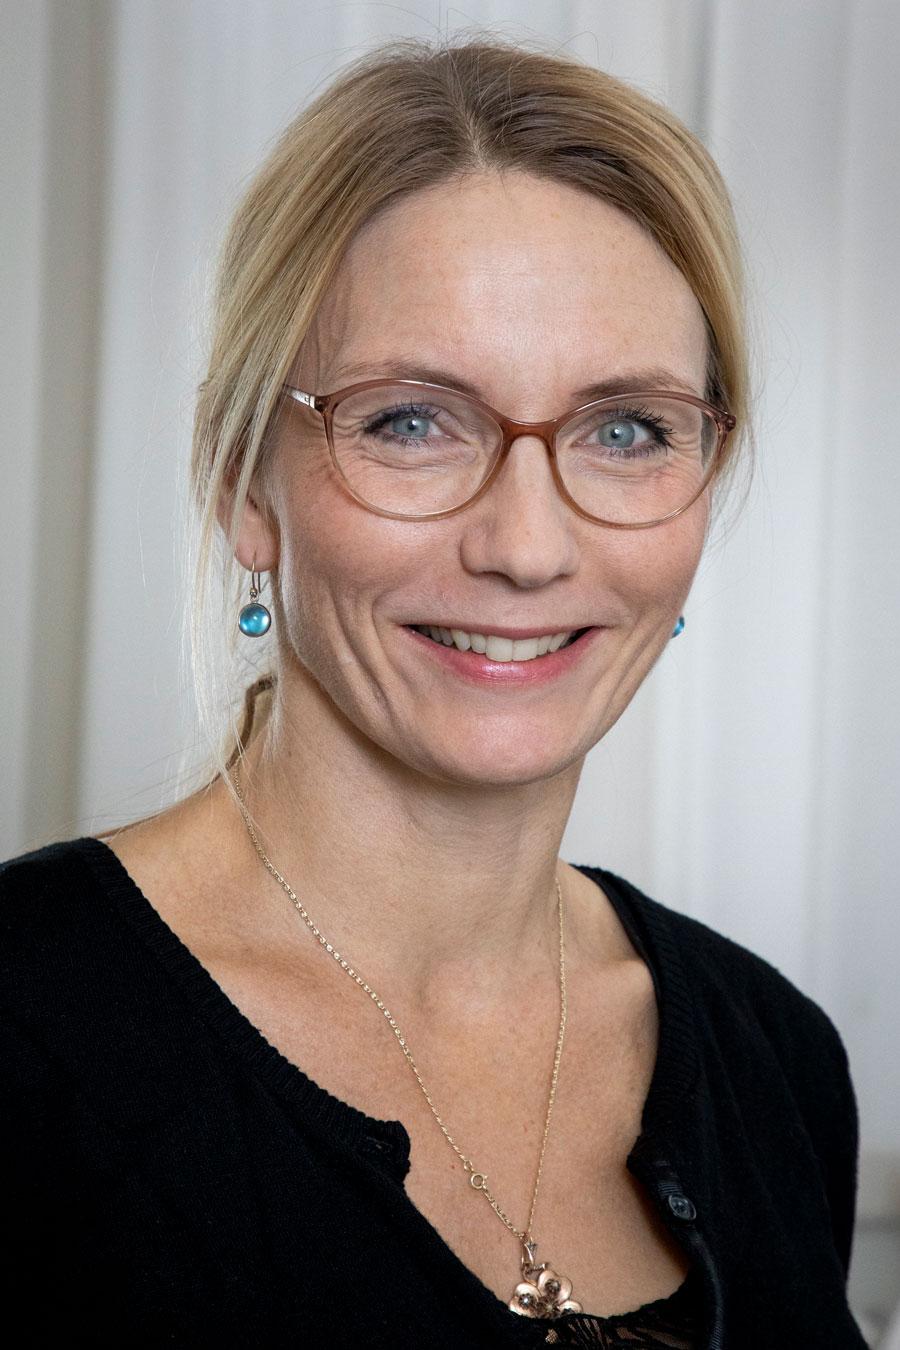 Anna Rørbæk Uldall er en af tre læger, der i 2015 gik sammen i et kompagniskab i Rudkøbing på Langeland. Hun har været speciallæge siden 2011 og har før Langeland haft ansættelser på geriatrisk afdeling, vikariater i almen praksis og har også arbejdet på vårdcentral i Sverige. Foto: Heidi Lundsgaard